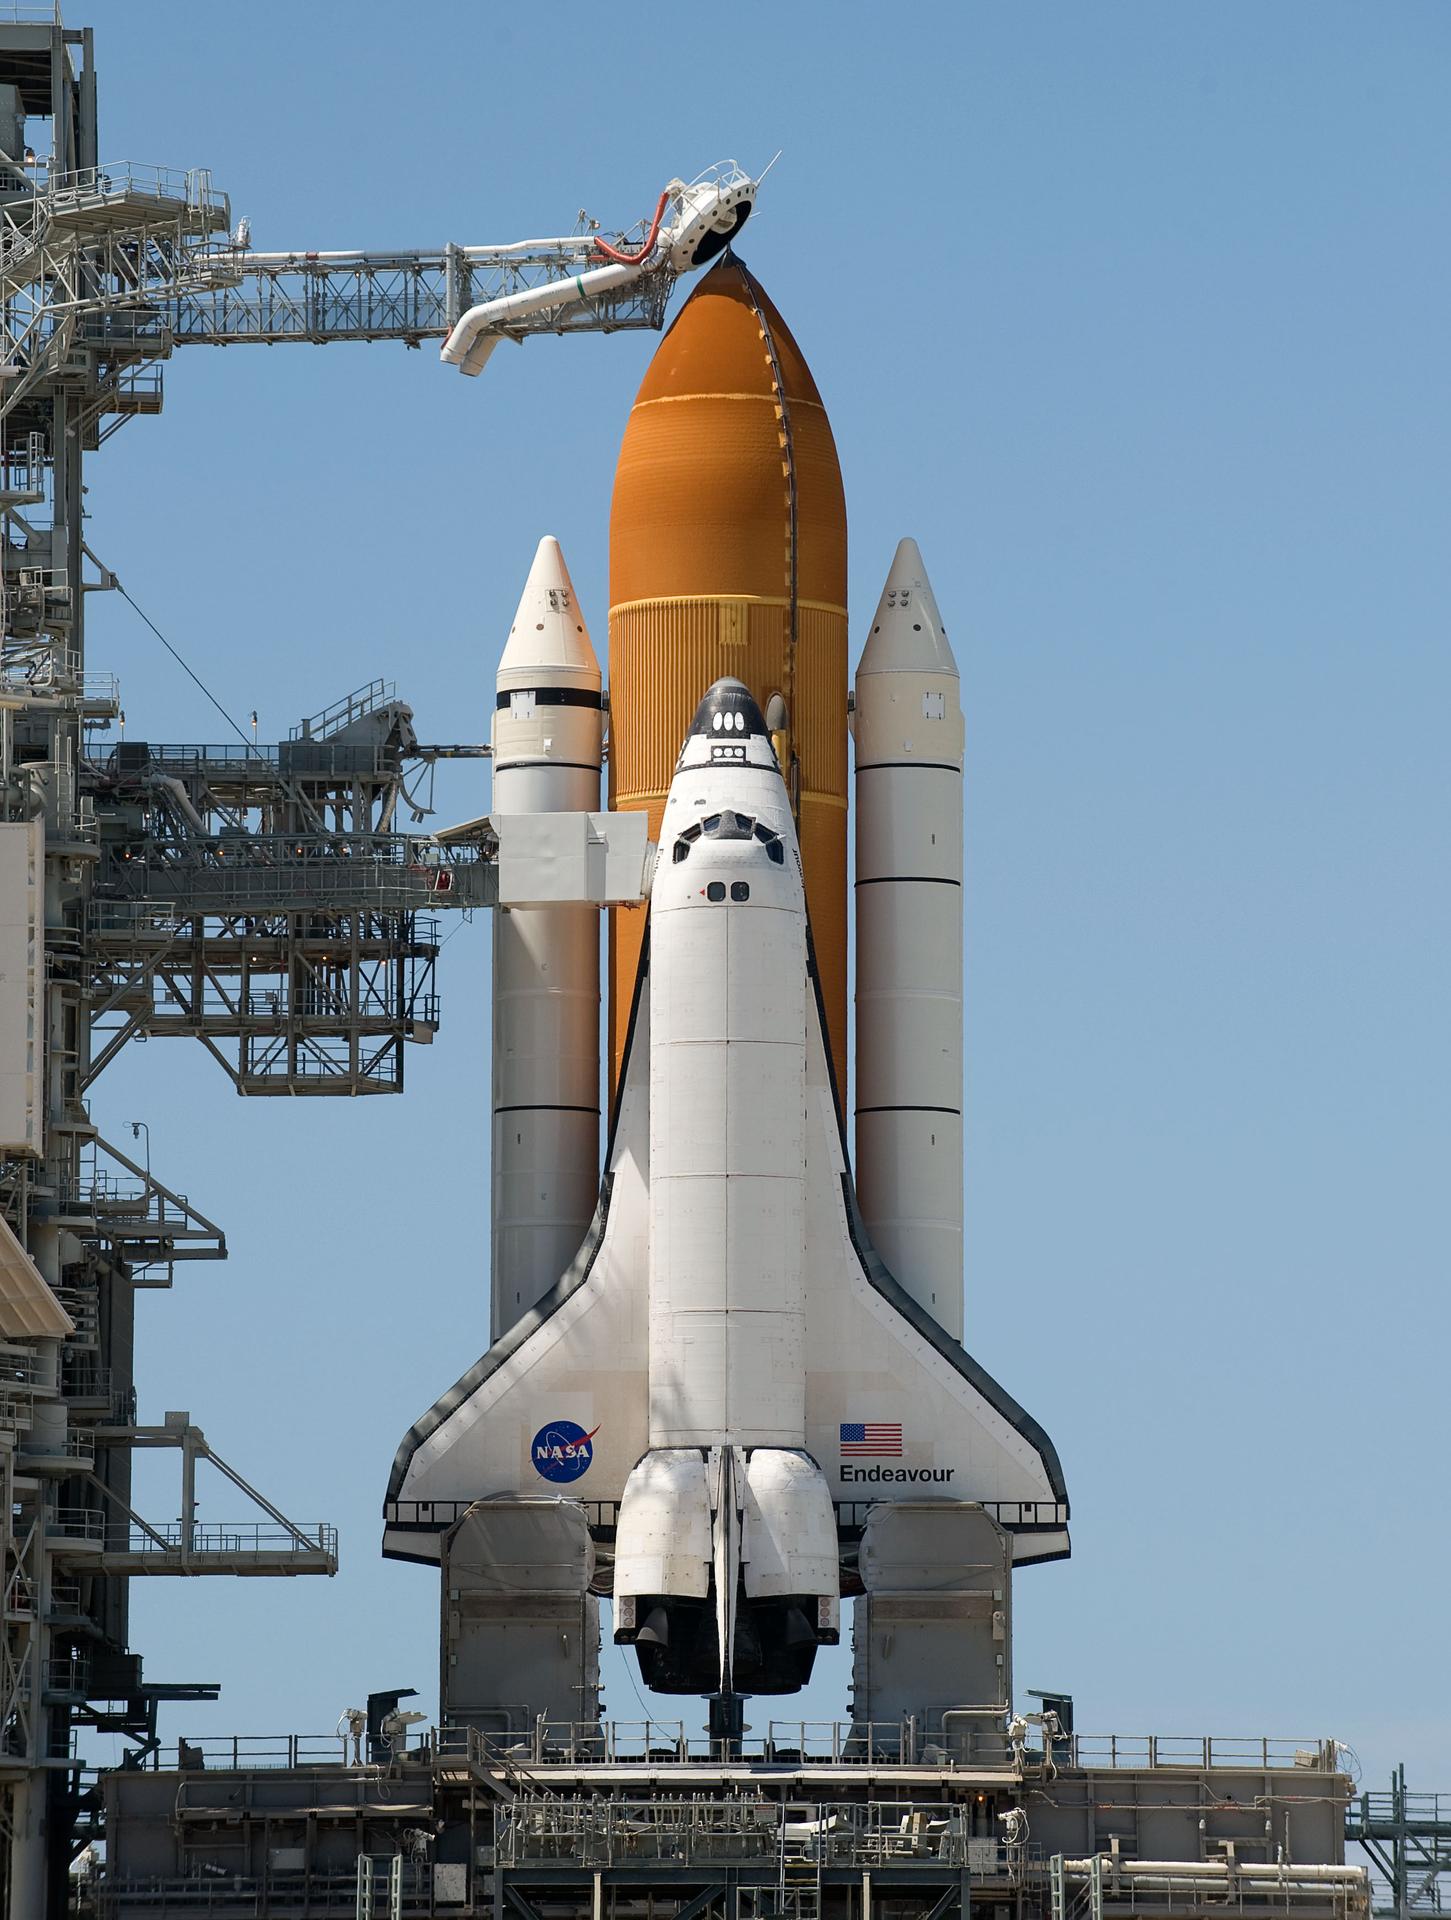 กระสวยอวกาศ Endeavour ที่ฐานปล่อย ซึ่งจะถูกวางตั้งยึดติดกับแทงค์ด้านนอก (สีส้ม) และจรวดผลักดัน (สีขาวขนาบข้าง)